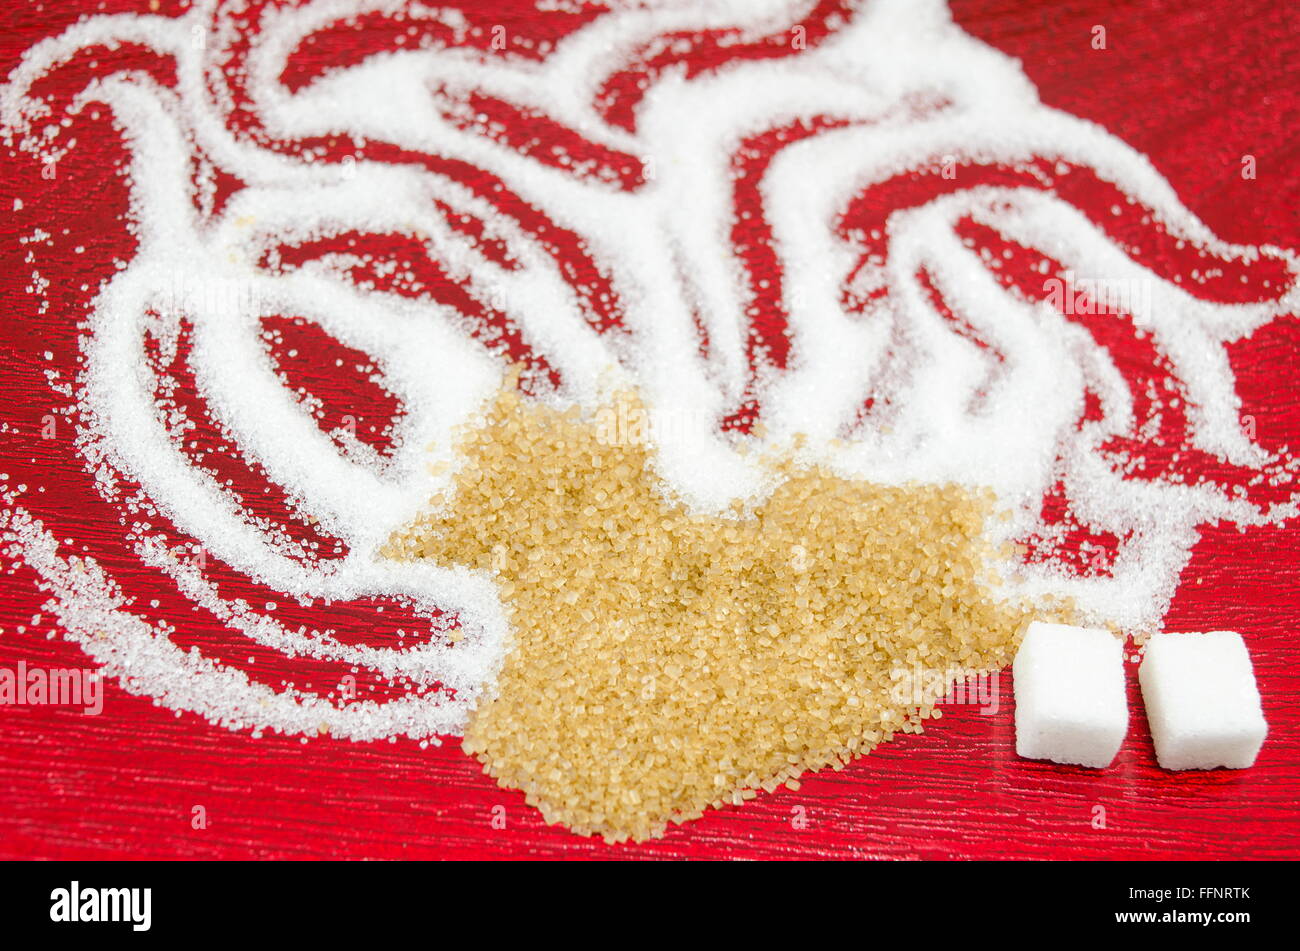 Weißer und brauner Zucker Formen auf rotem Grund Stockfoto